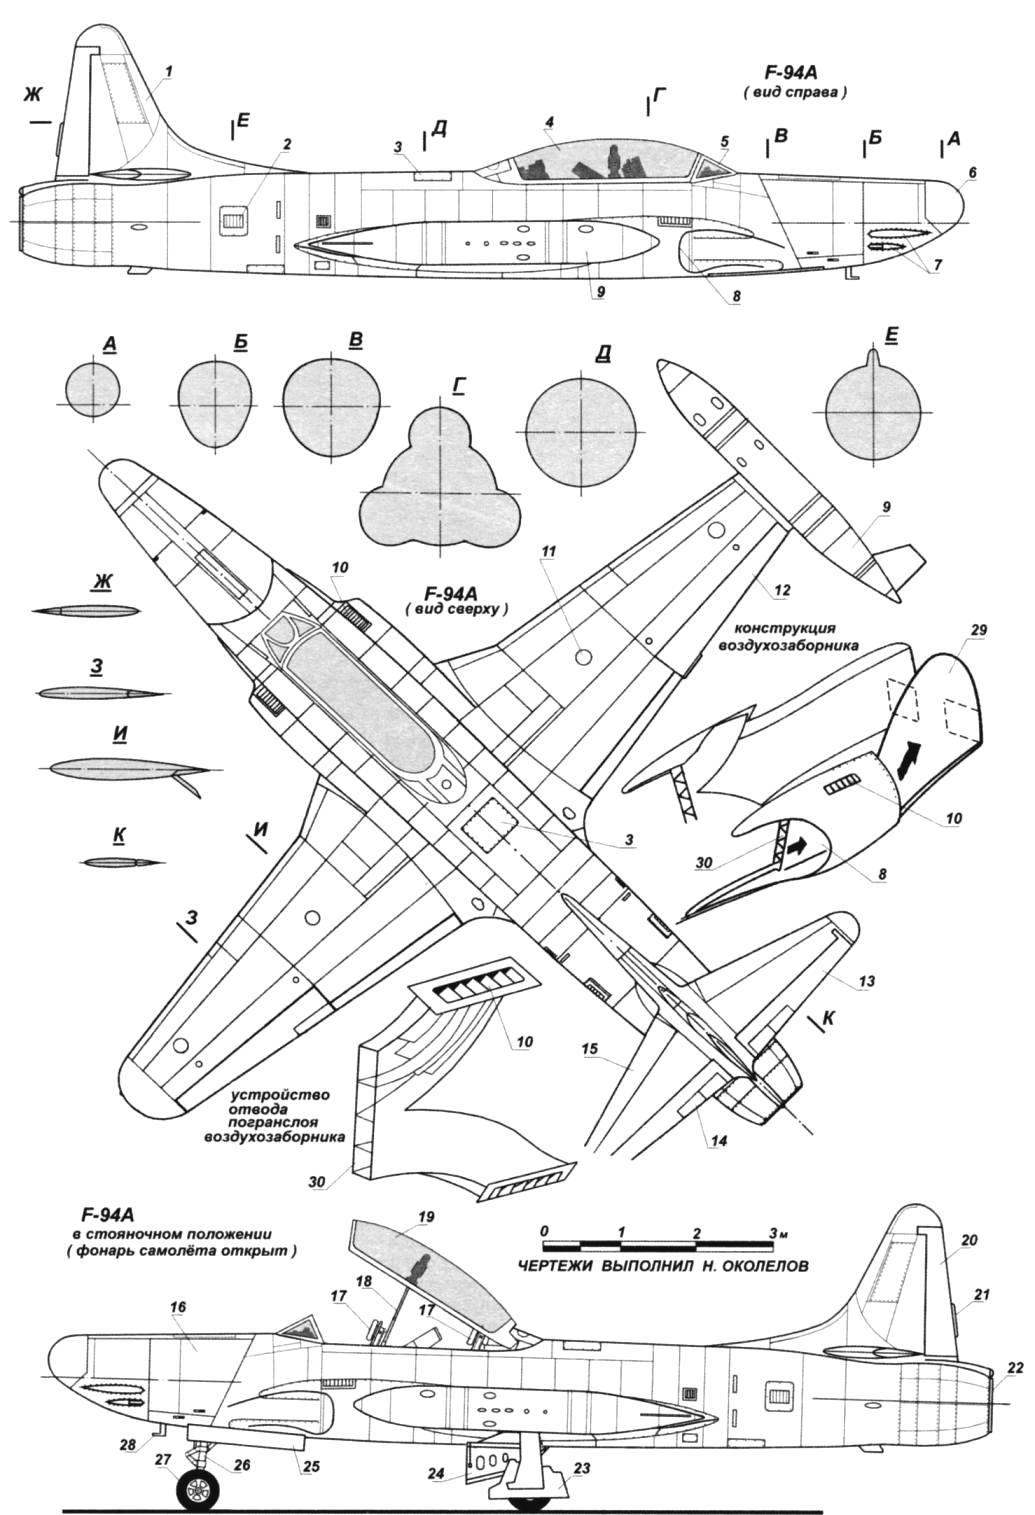 Обозначения к чертежу F-94